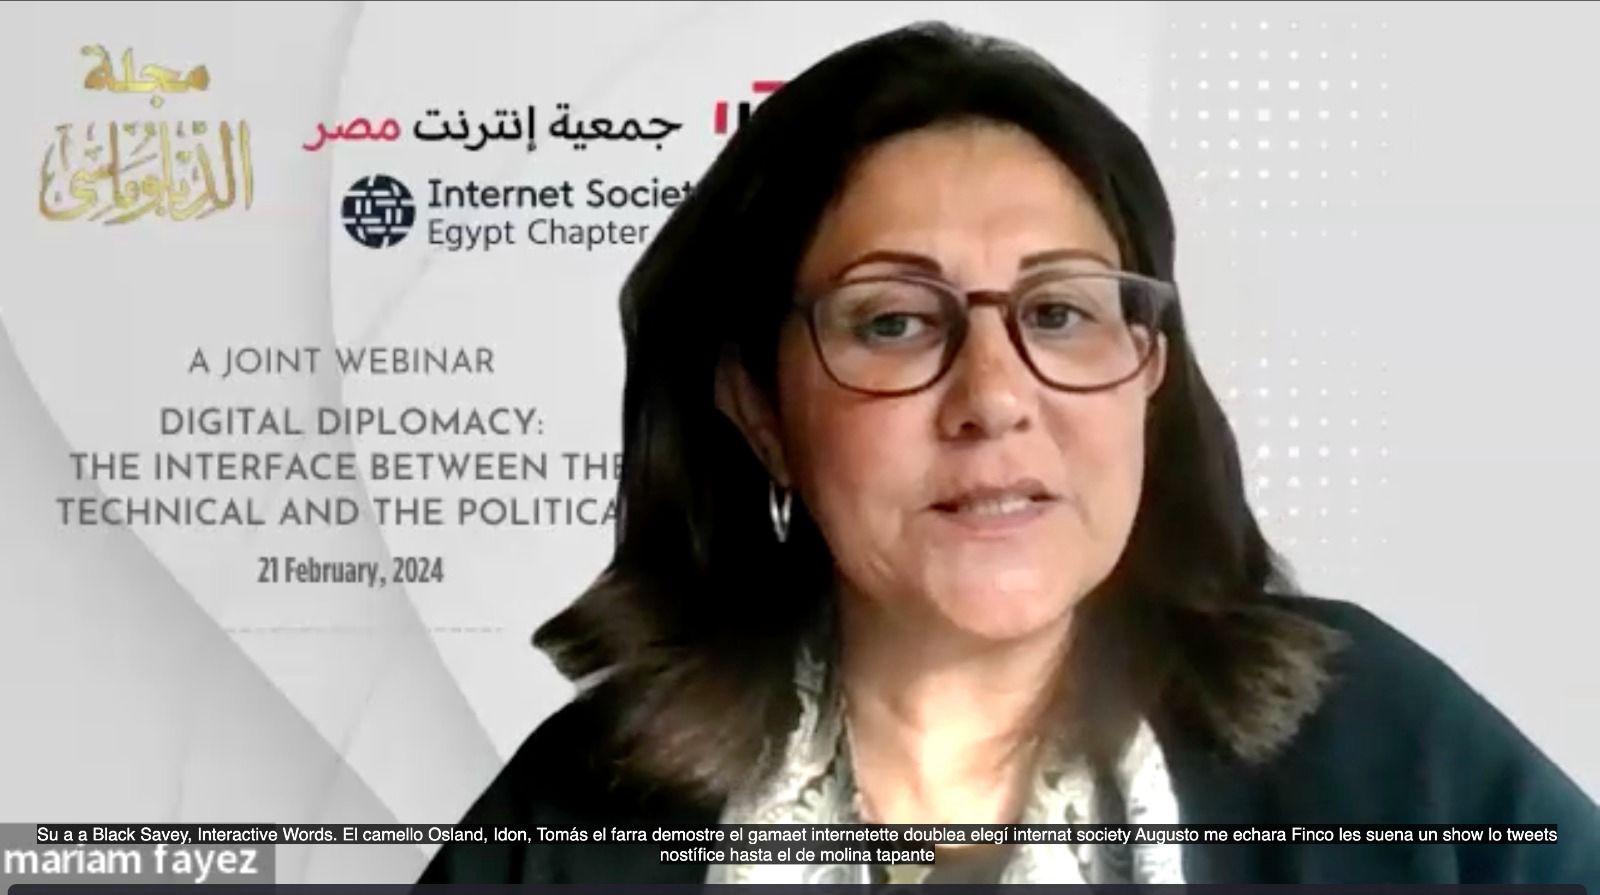 بالشراكة بين "جمعية إنترنت مصر" ومجلة الدبلوماسي" ندوة مرئية حول "الدبلوماسية الرقمية"